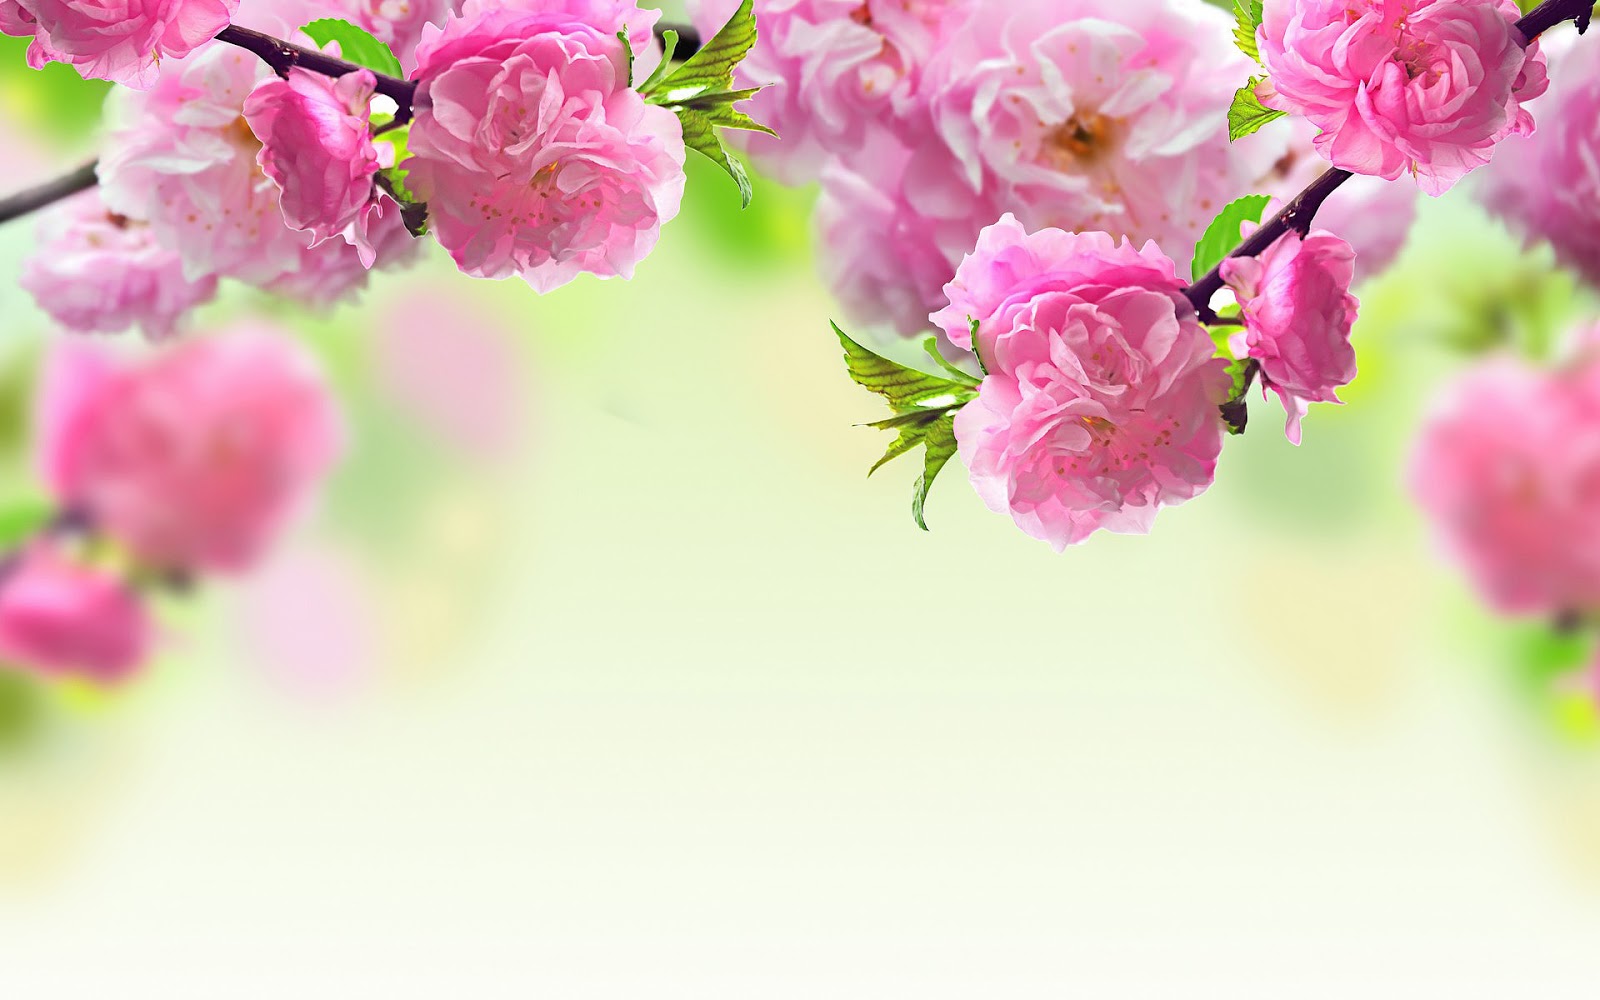 http://3.bp.blogspot.com/-F7cig1iC5I4/USFCaBoi7dI/AAAAAAAANK0/-_r4CpQuAYY/s1600/roze-bloemen-in-de-lente-hd-lente-wallpaper.jpg